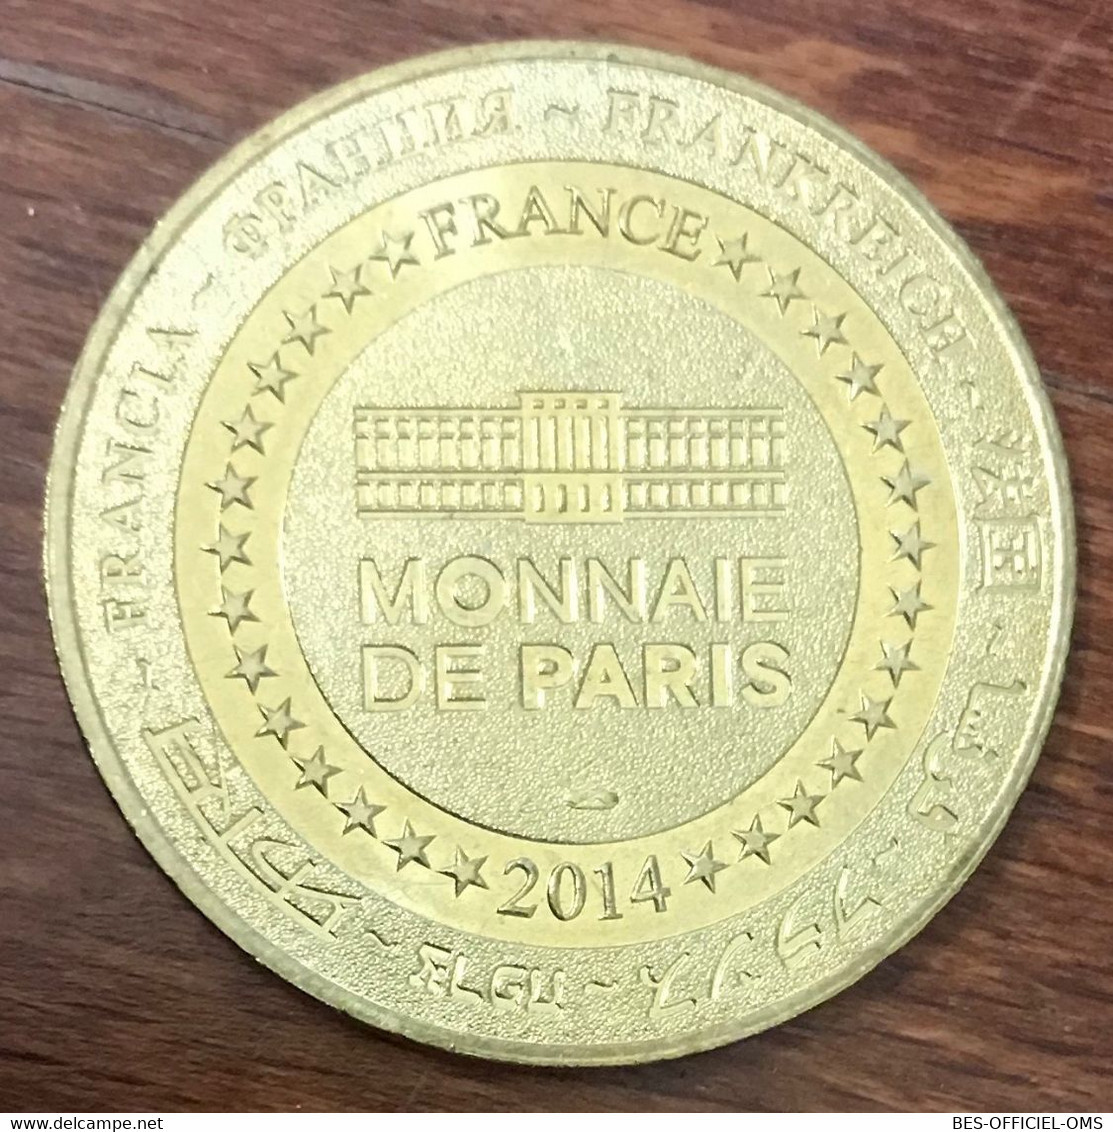 29 BREST OCÉANOPOLIS LES MANCHOTS MDP 2014 MÉDAILLE SOUVENIR MONNAIE DE PARIS JETON TOURISTIQUE MEDALS COINS TOKENS - 2014